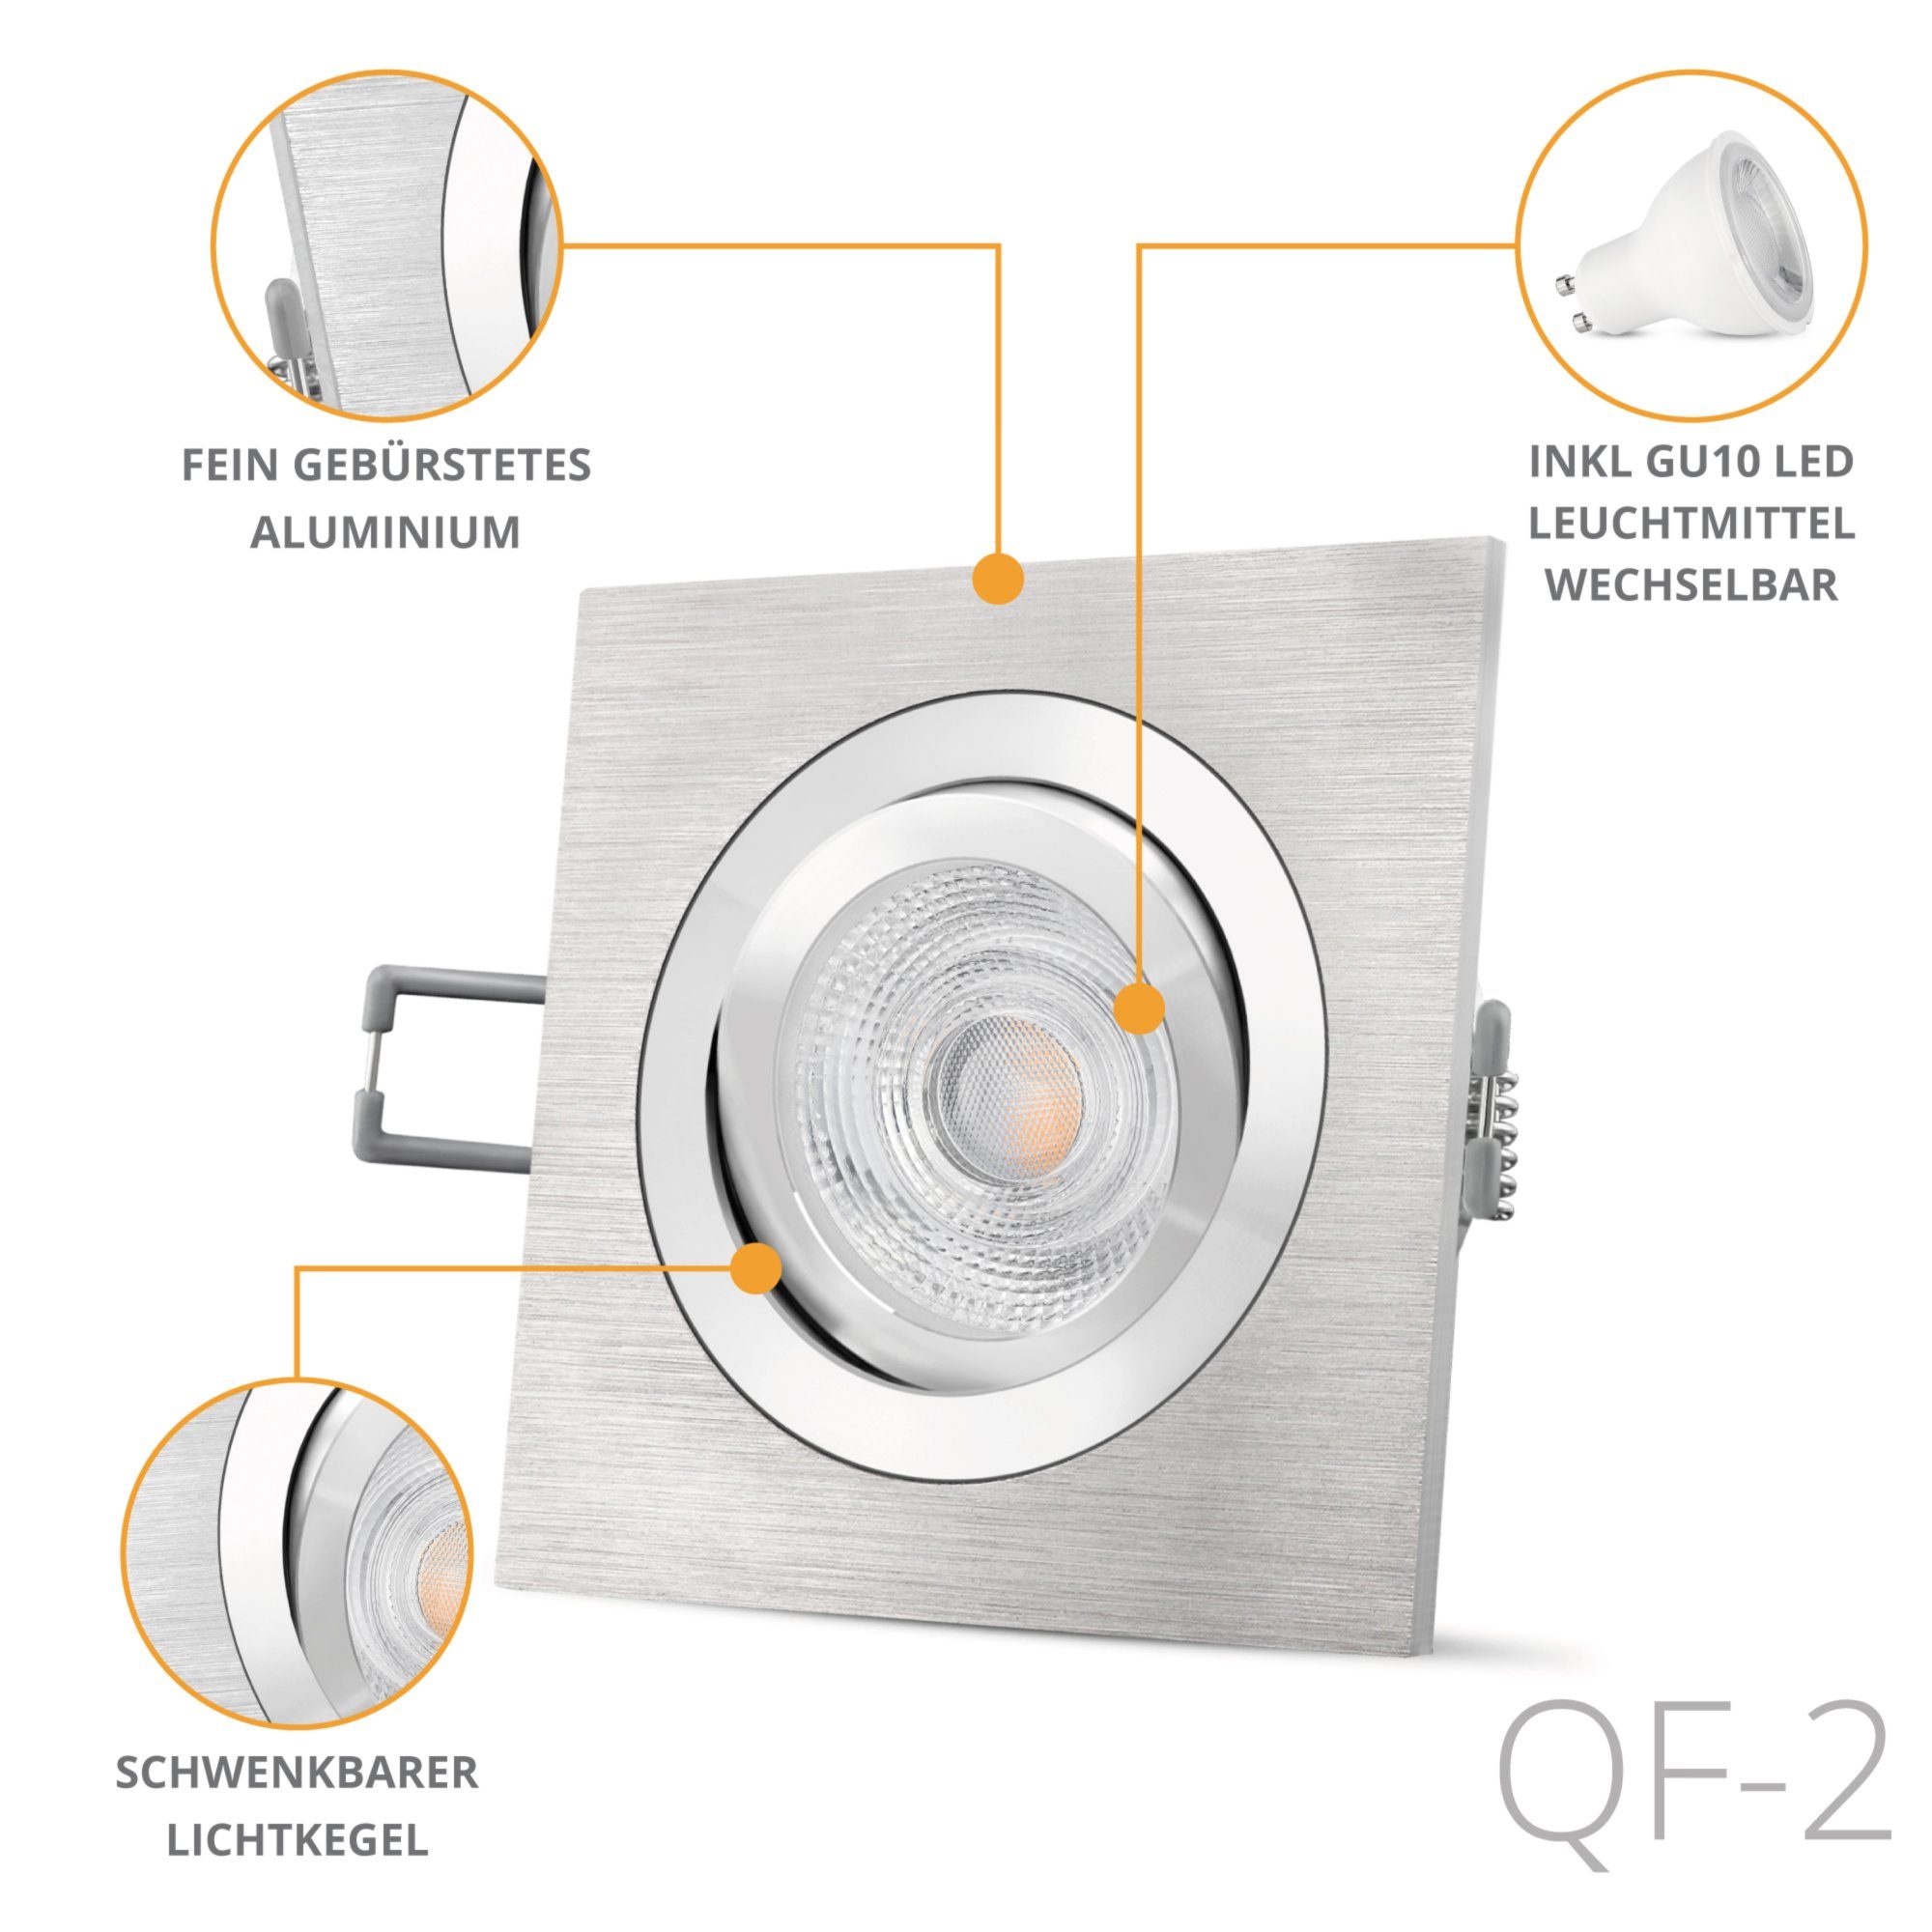 quadratische SSC-LUXon schwenkbar, Alu LED Einbauleuchte Warmweiß LED gebuerstet QF-2 Einbaustrahler